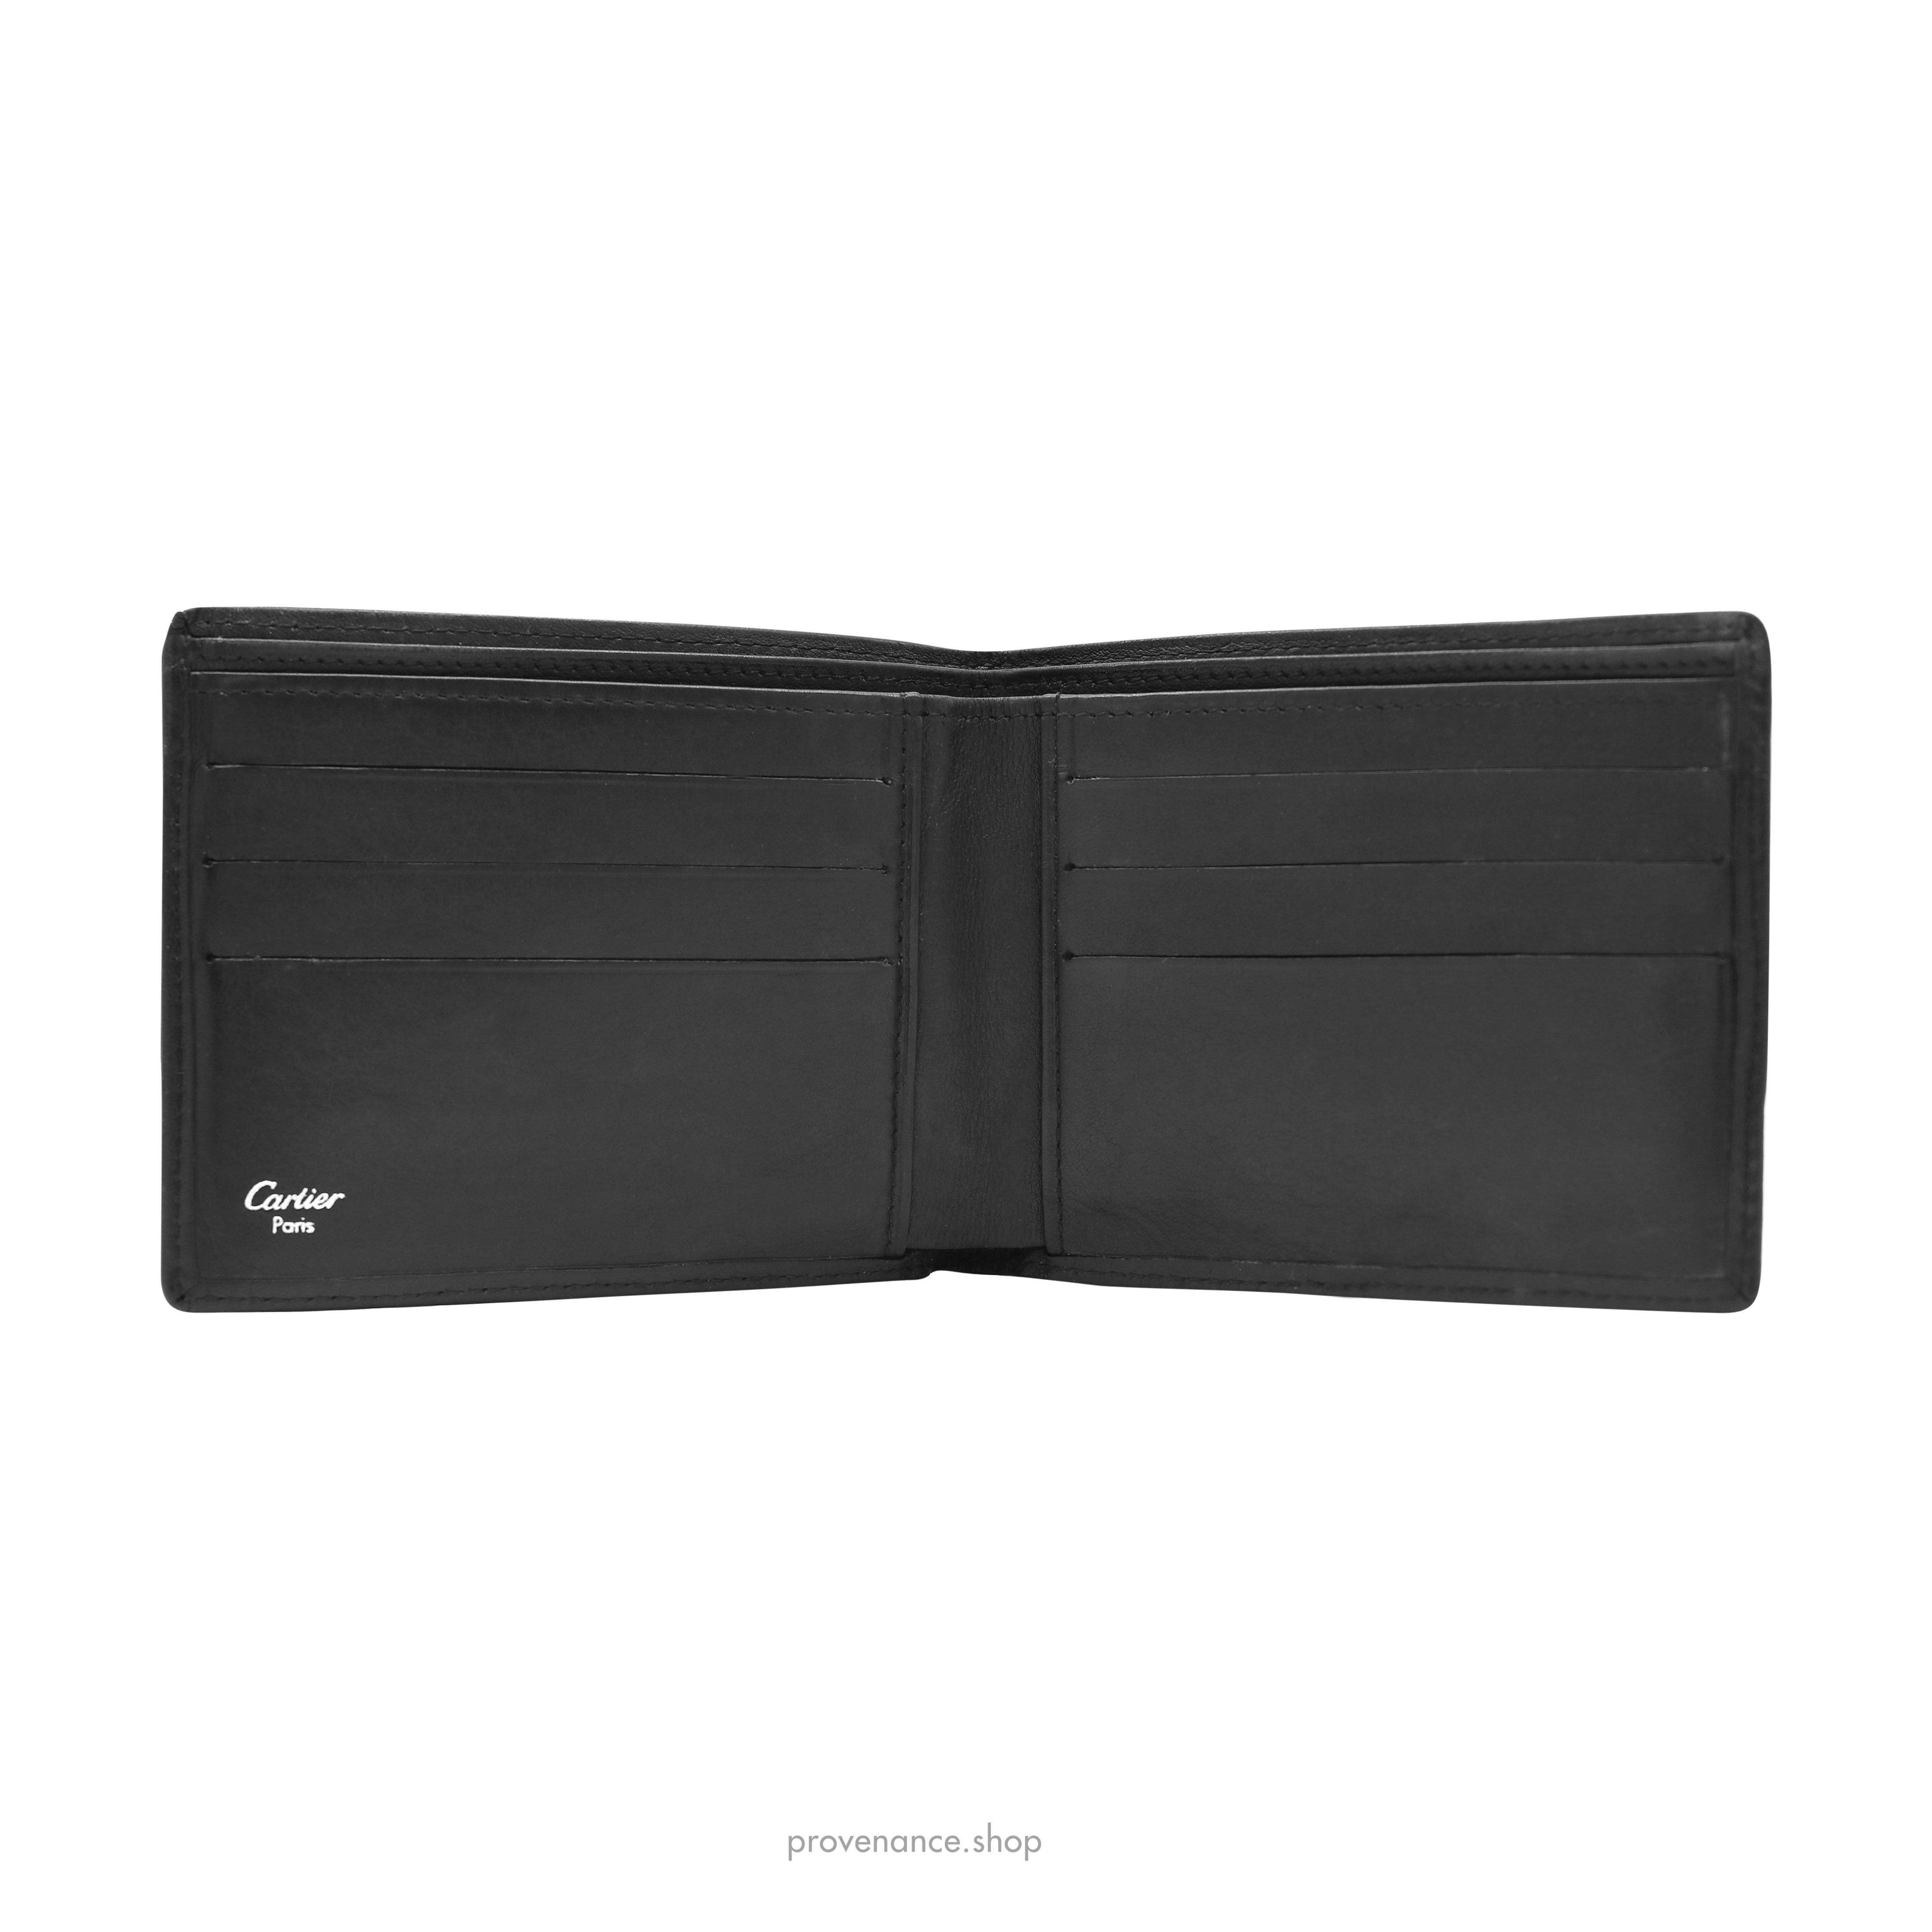 Cartier 6CC Bifold Wallet - Black Calfskin Leather - 6